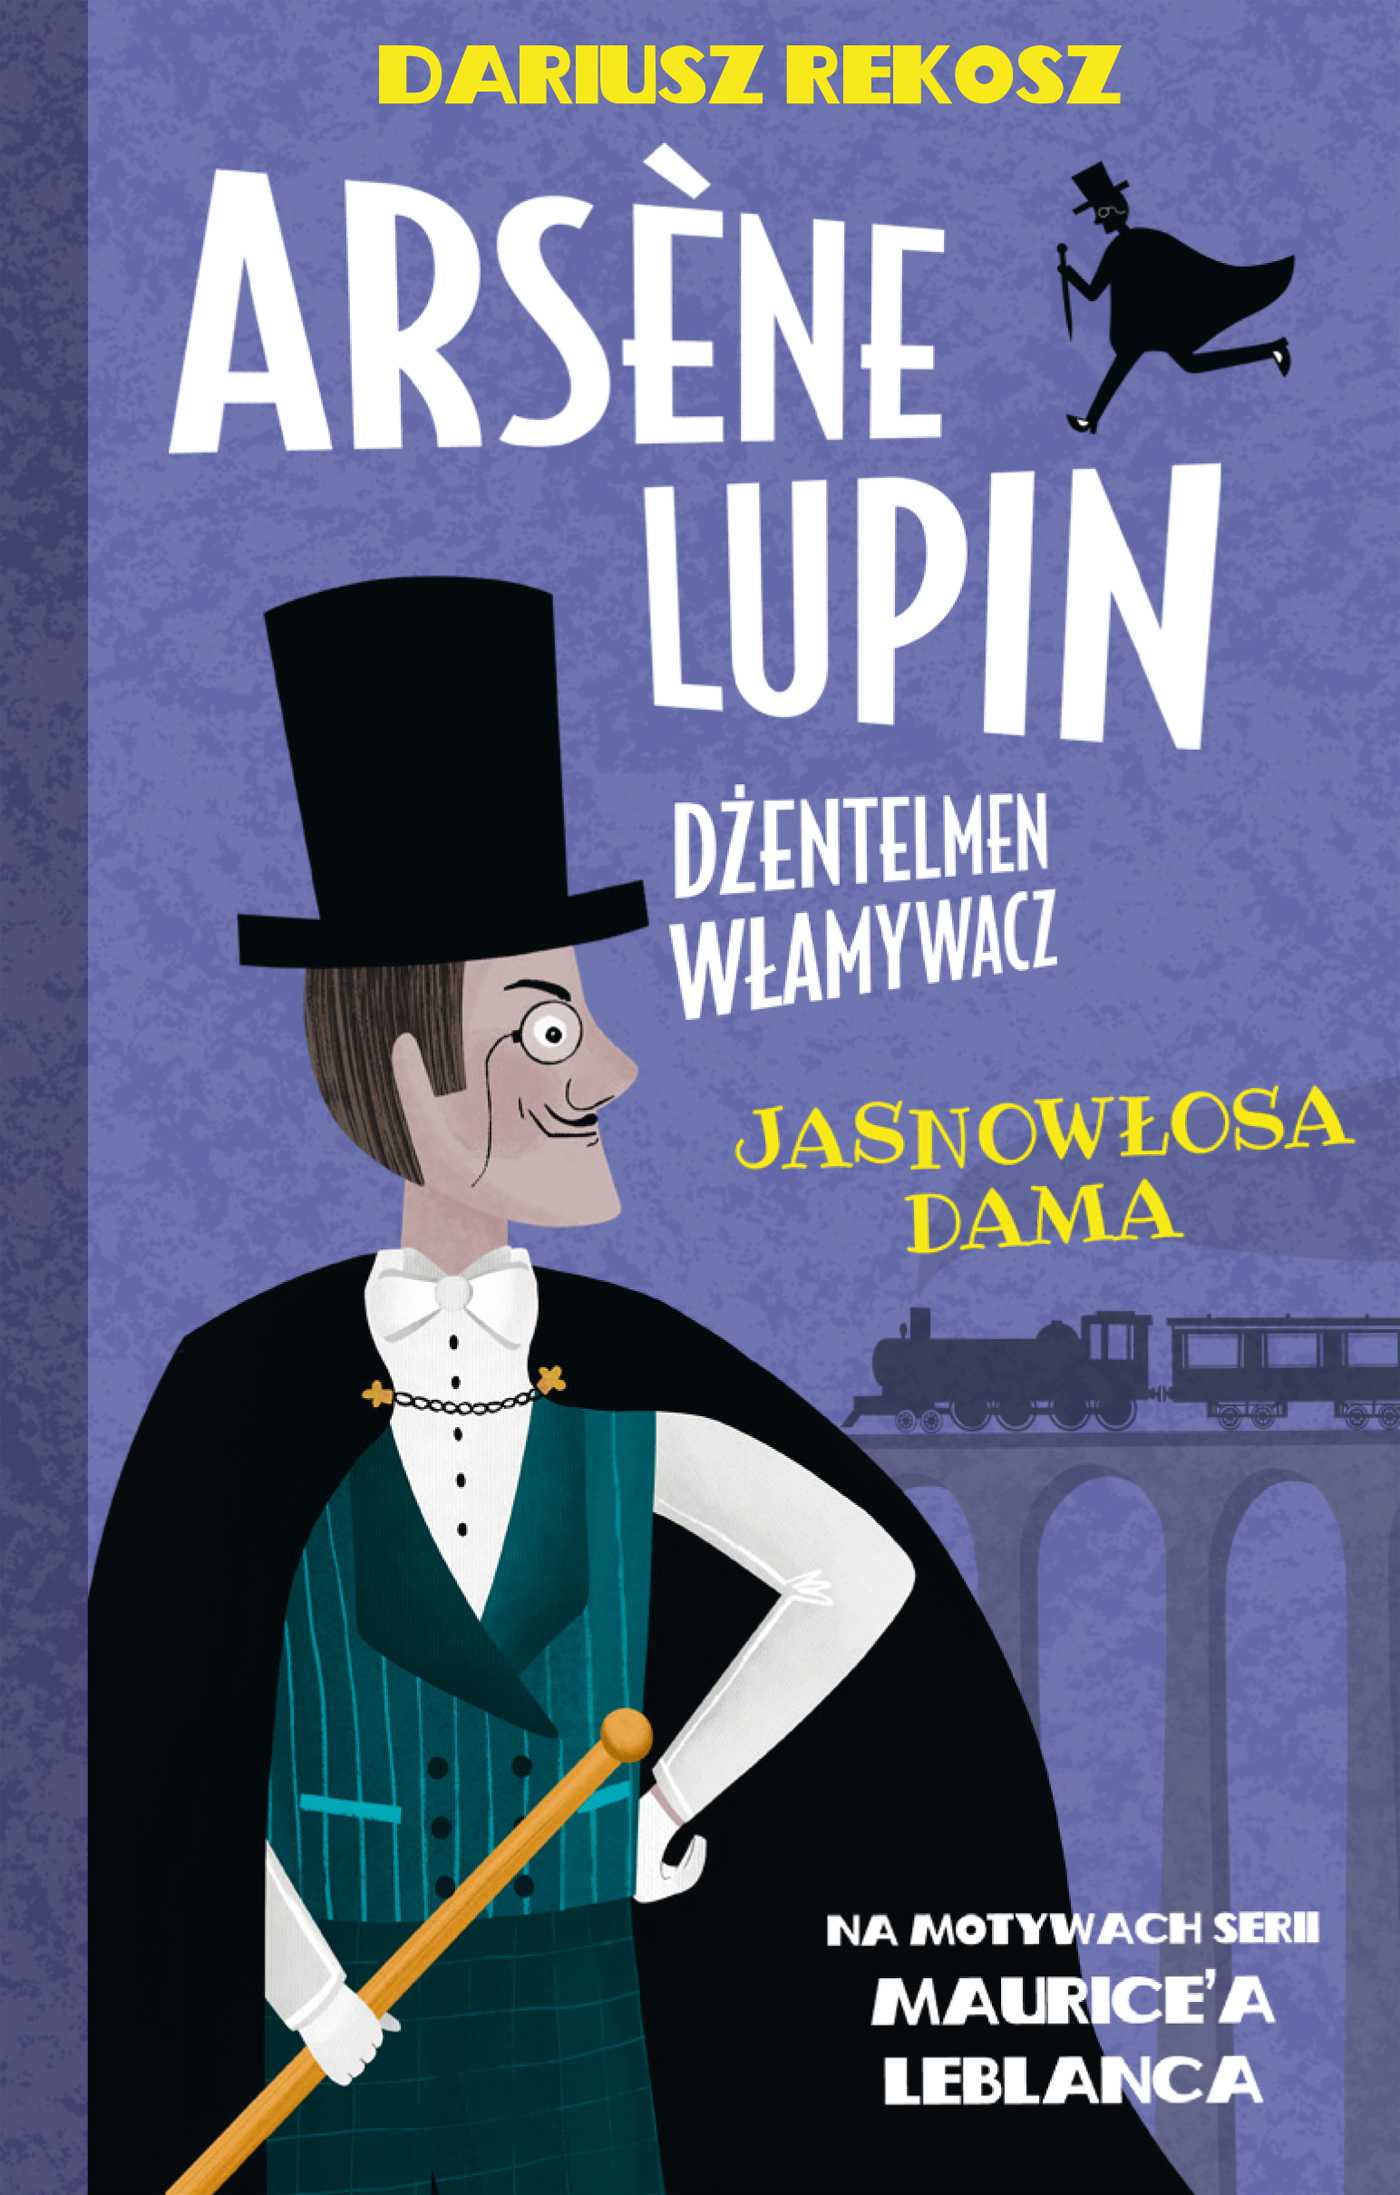 Arsène Lupin – dżentelmen włamywacz. Tom 5. Jasnowłosa dama